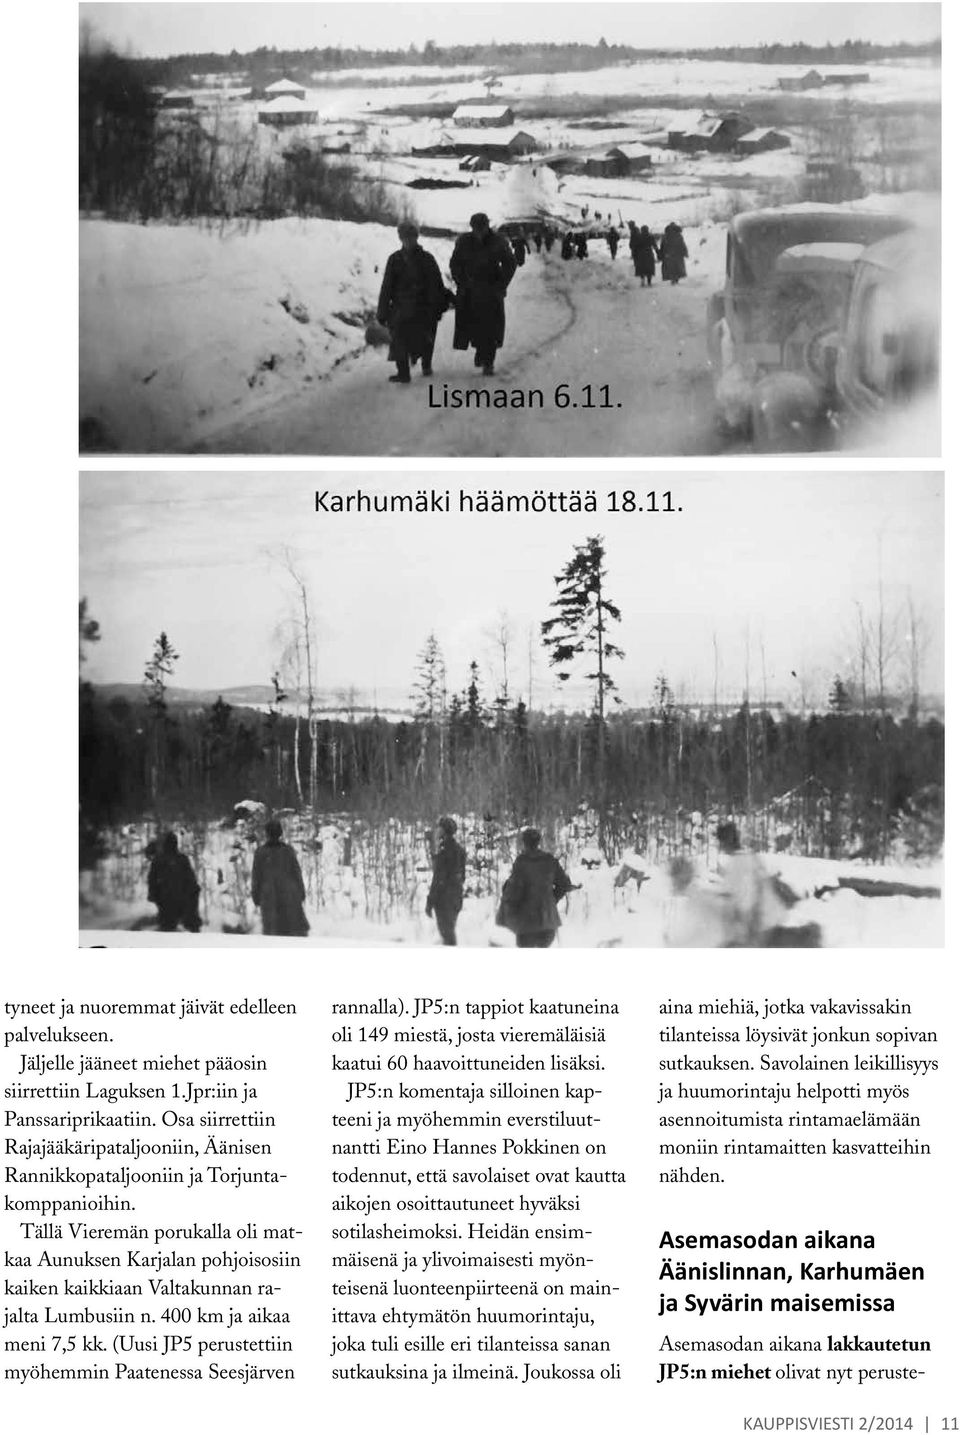 Tällä Vieremän porukalla oli matkaa Aunuksen Karjalan pohjoisosiin kaiken kaikkiaan Valtakunnan rajalta Lumbusiin n. 400 km ja aikaa meni 7,5 kk.